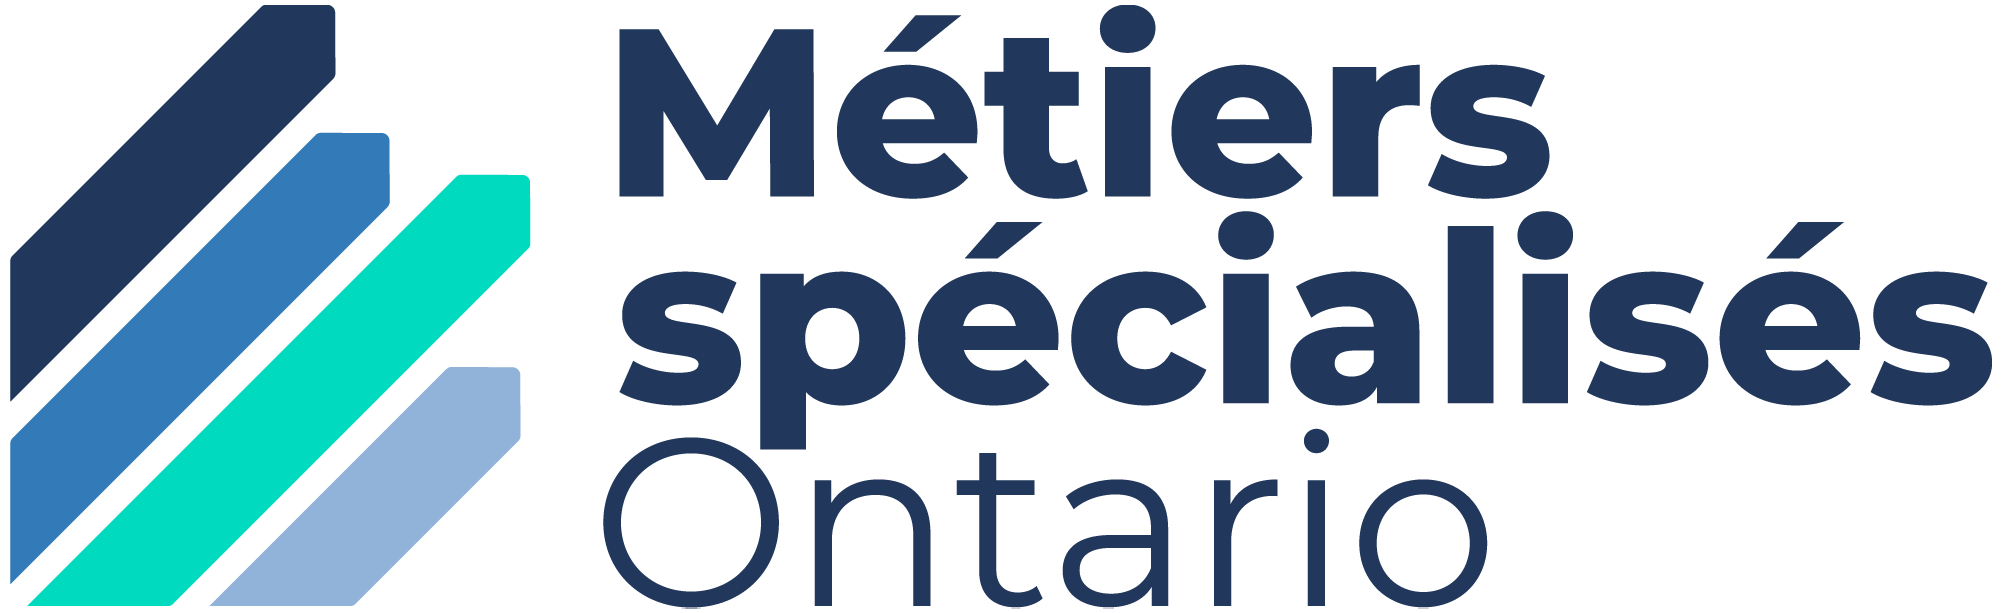 Skilled Trades Ontario Logo